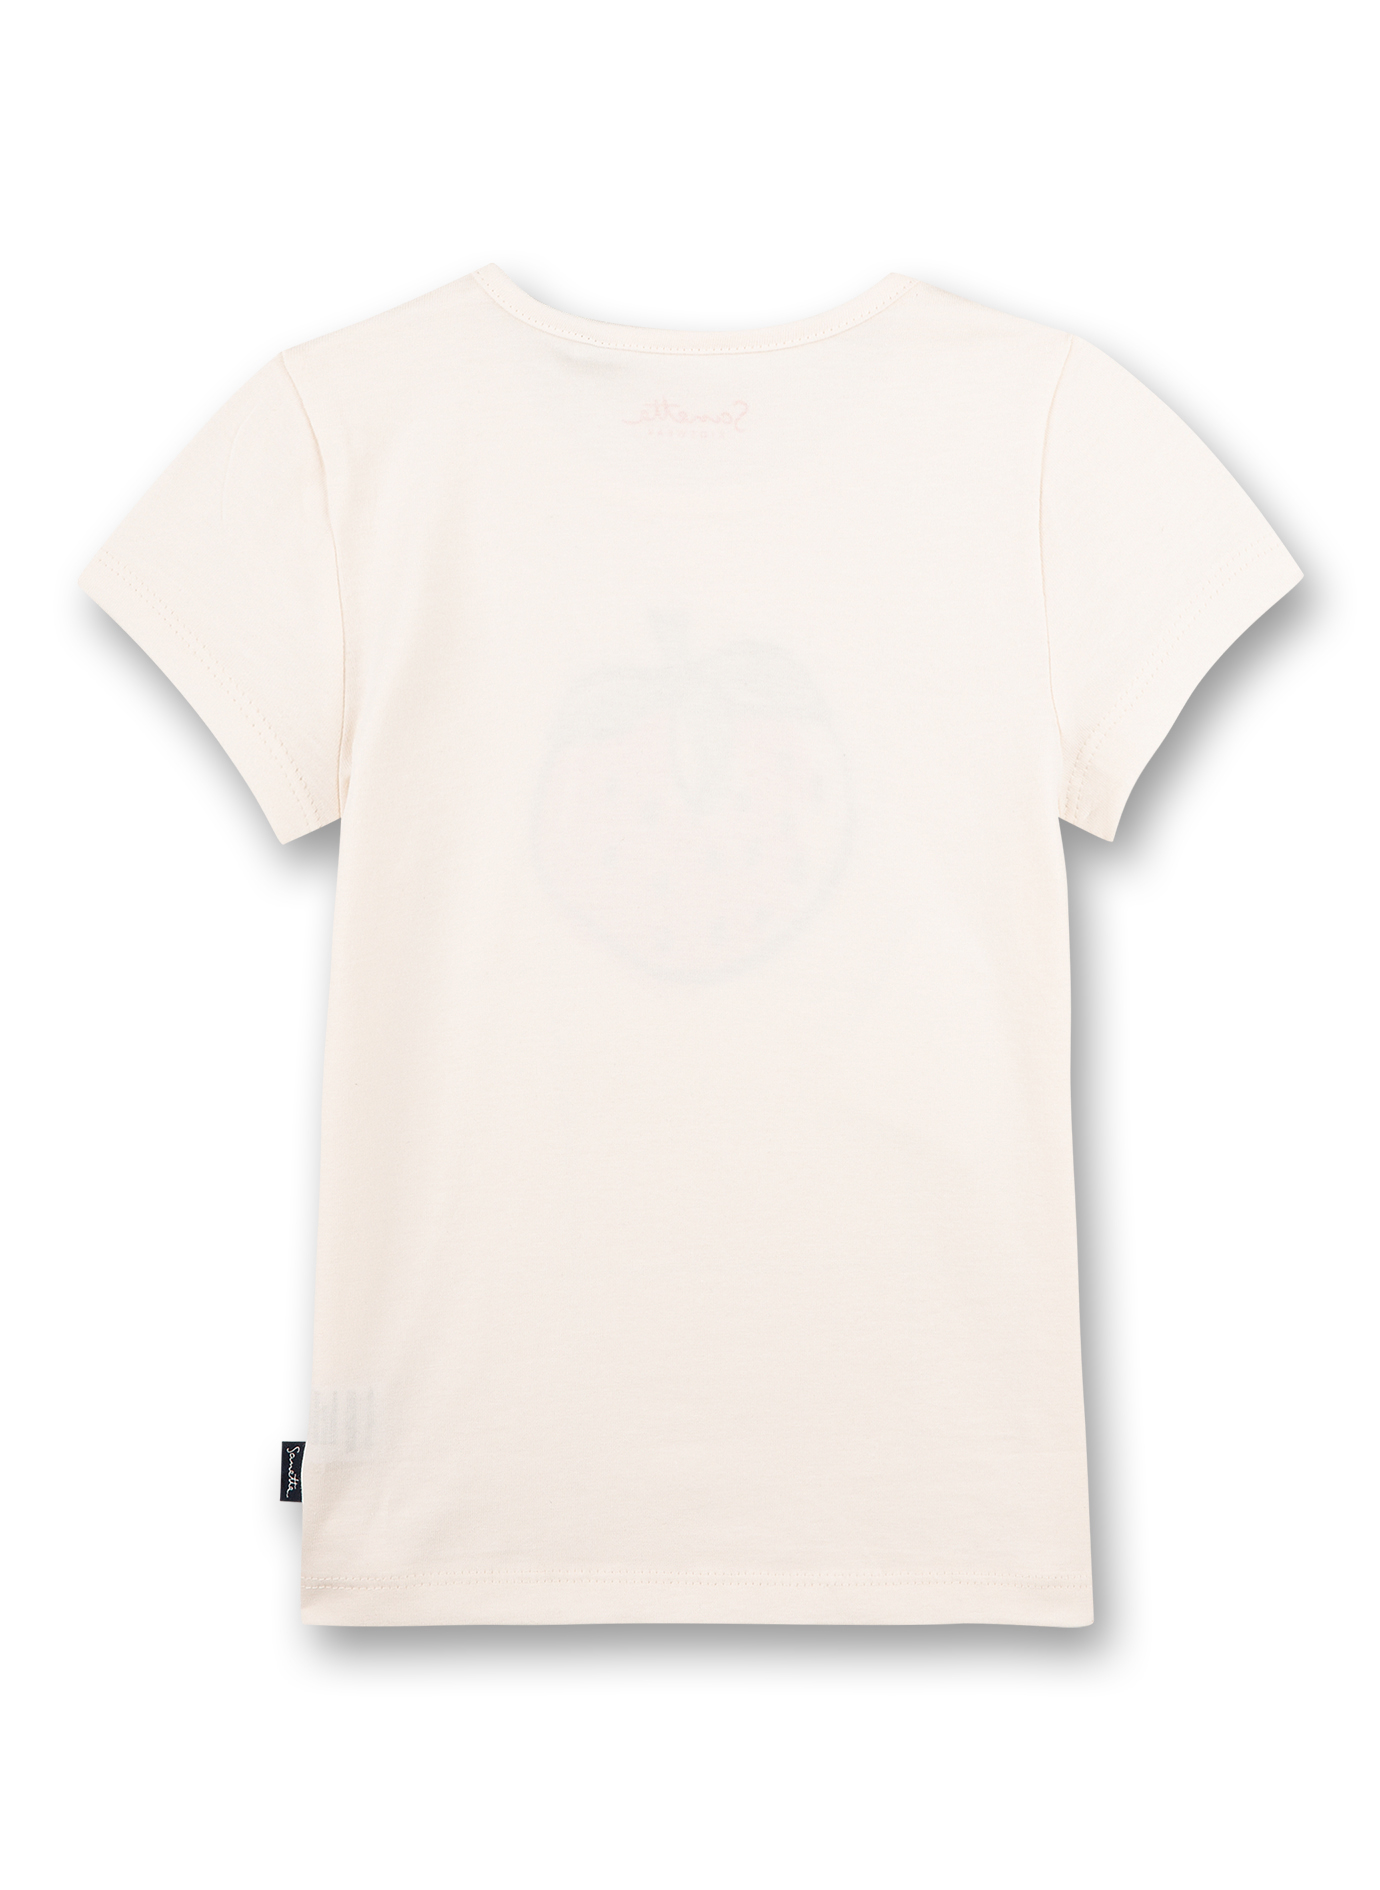 Mädchen-T-Shirt Weiß Strawberry